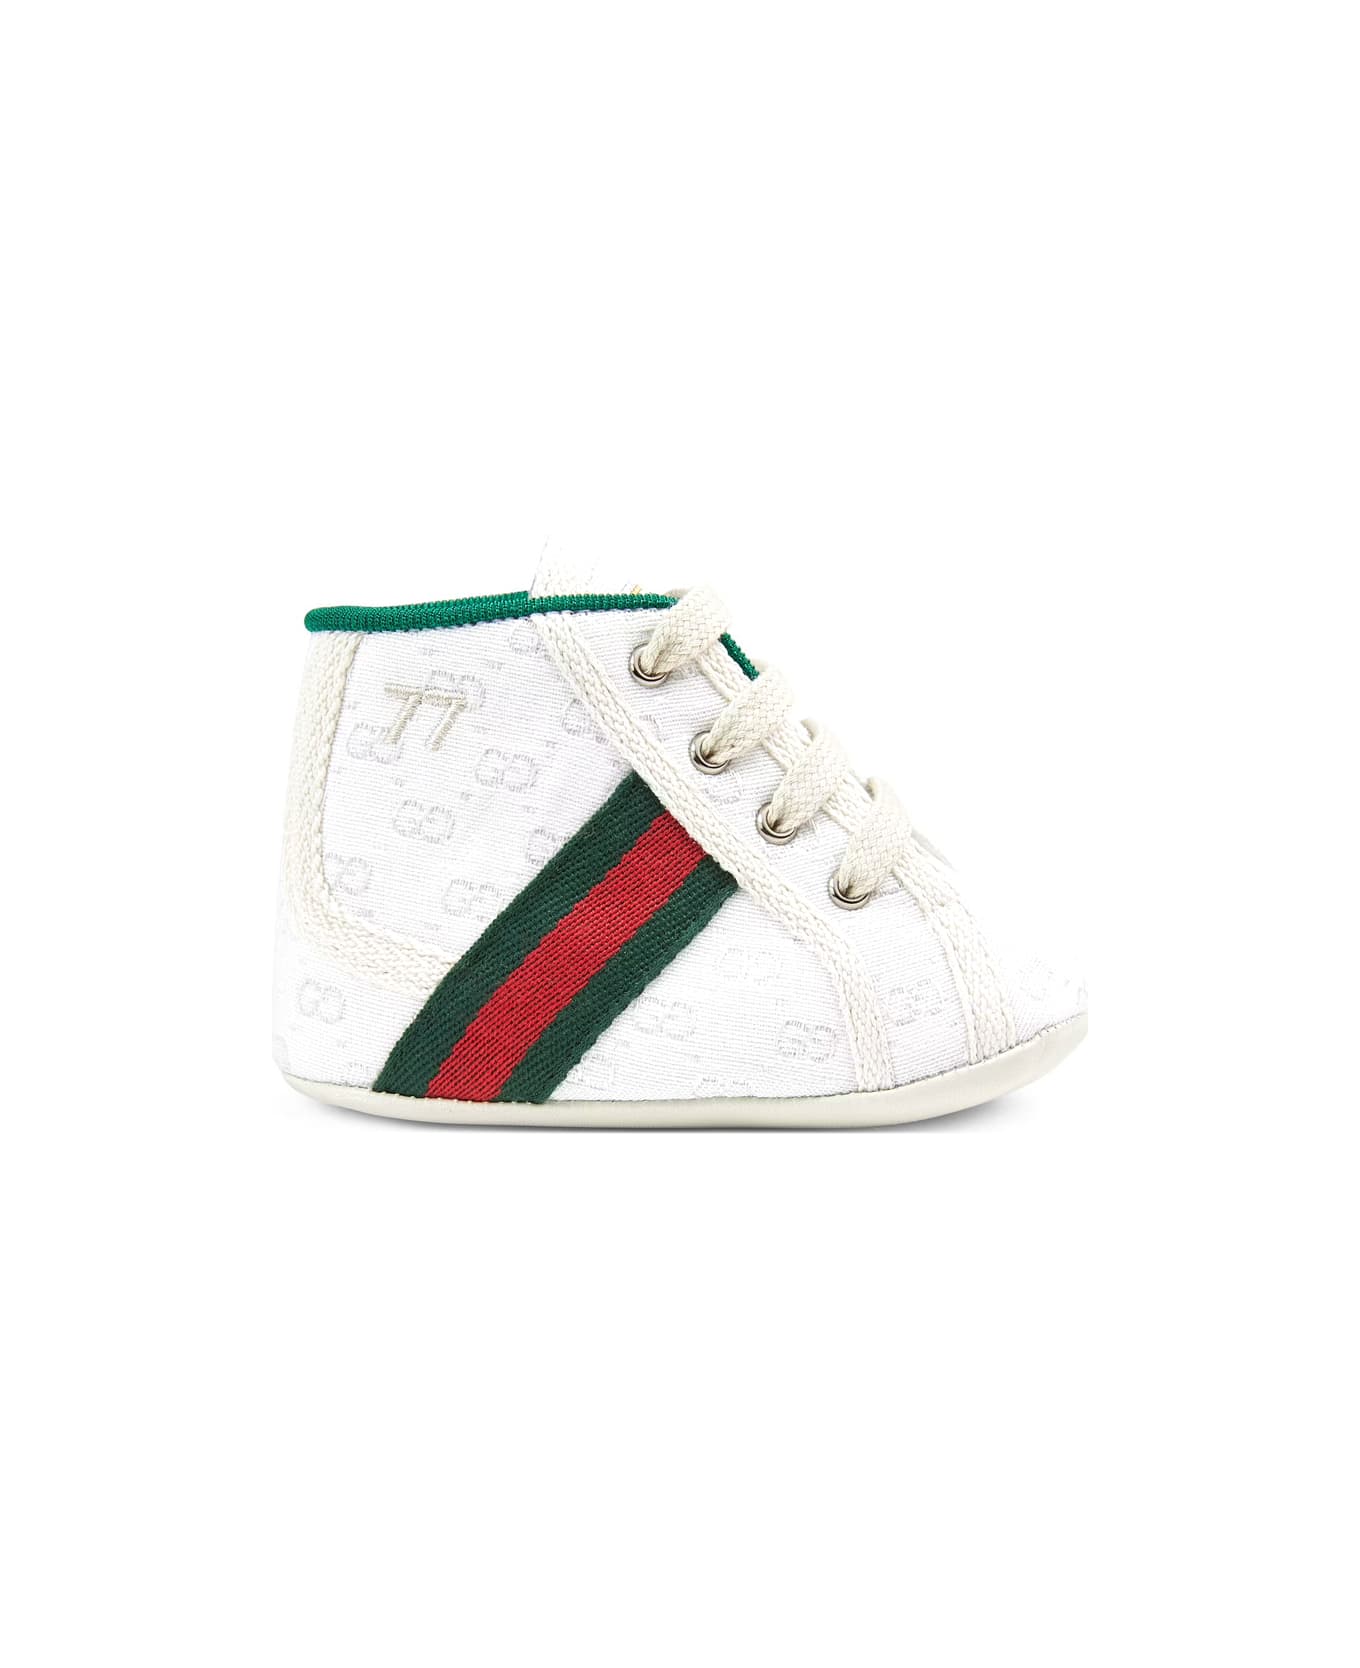 Gucci 1977 Gucci Tennis Sneakers - White